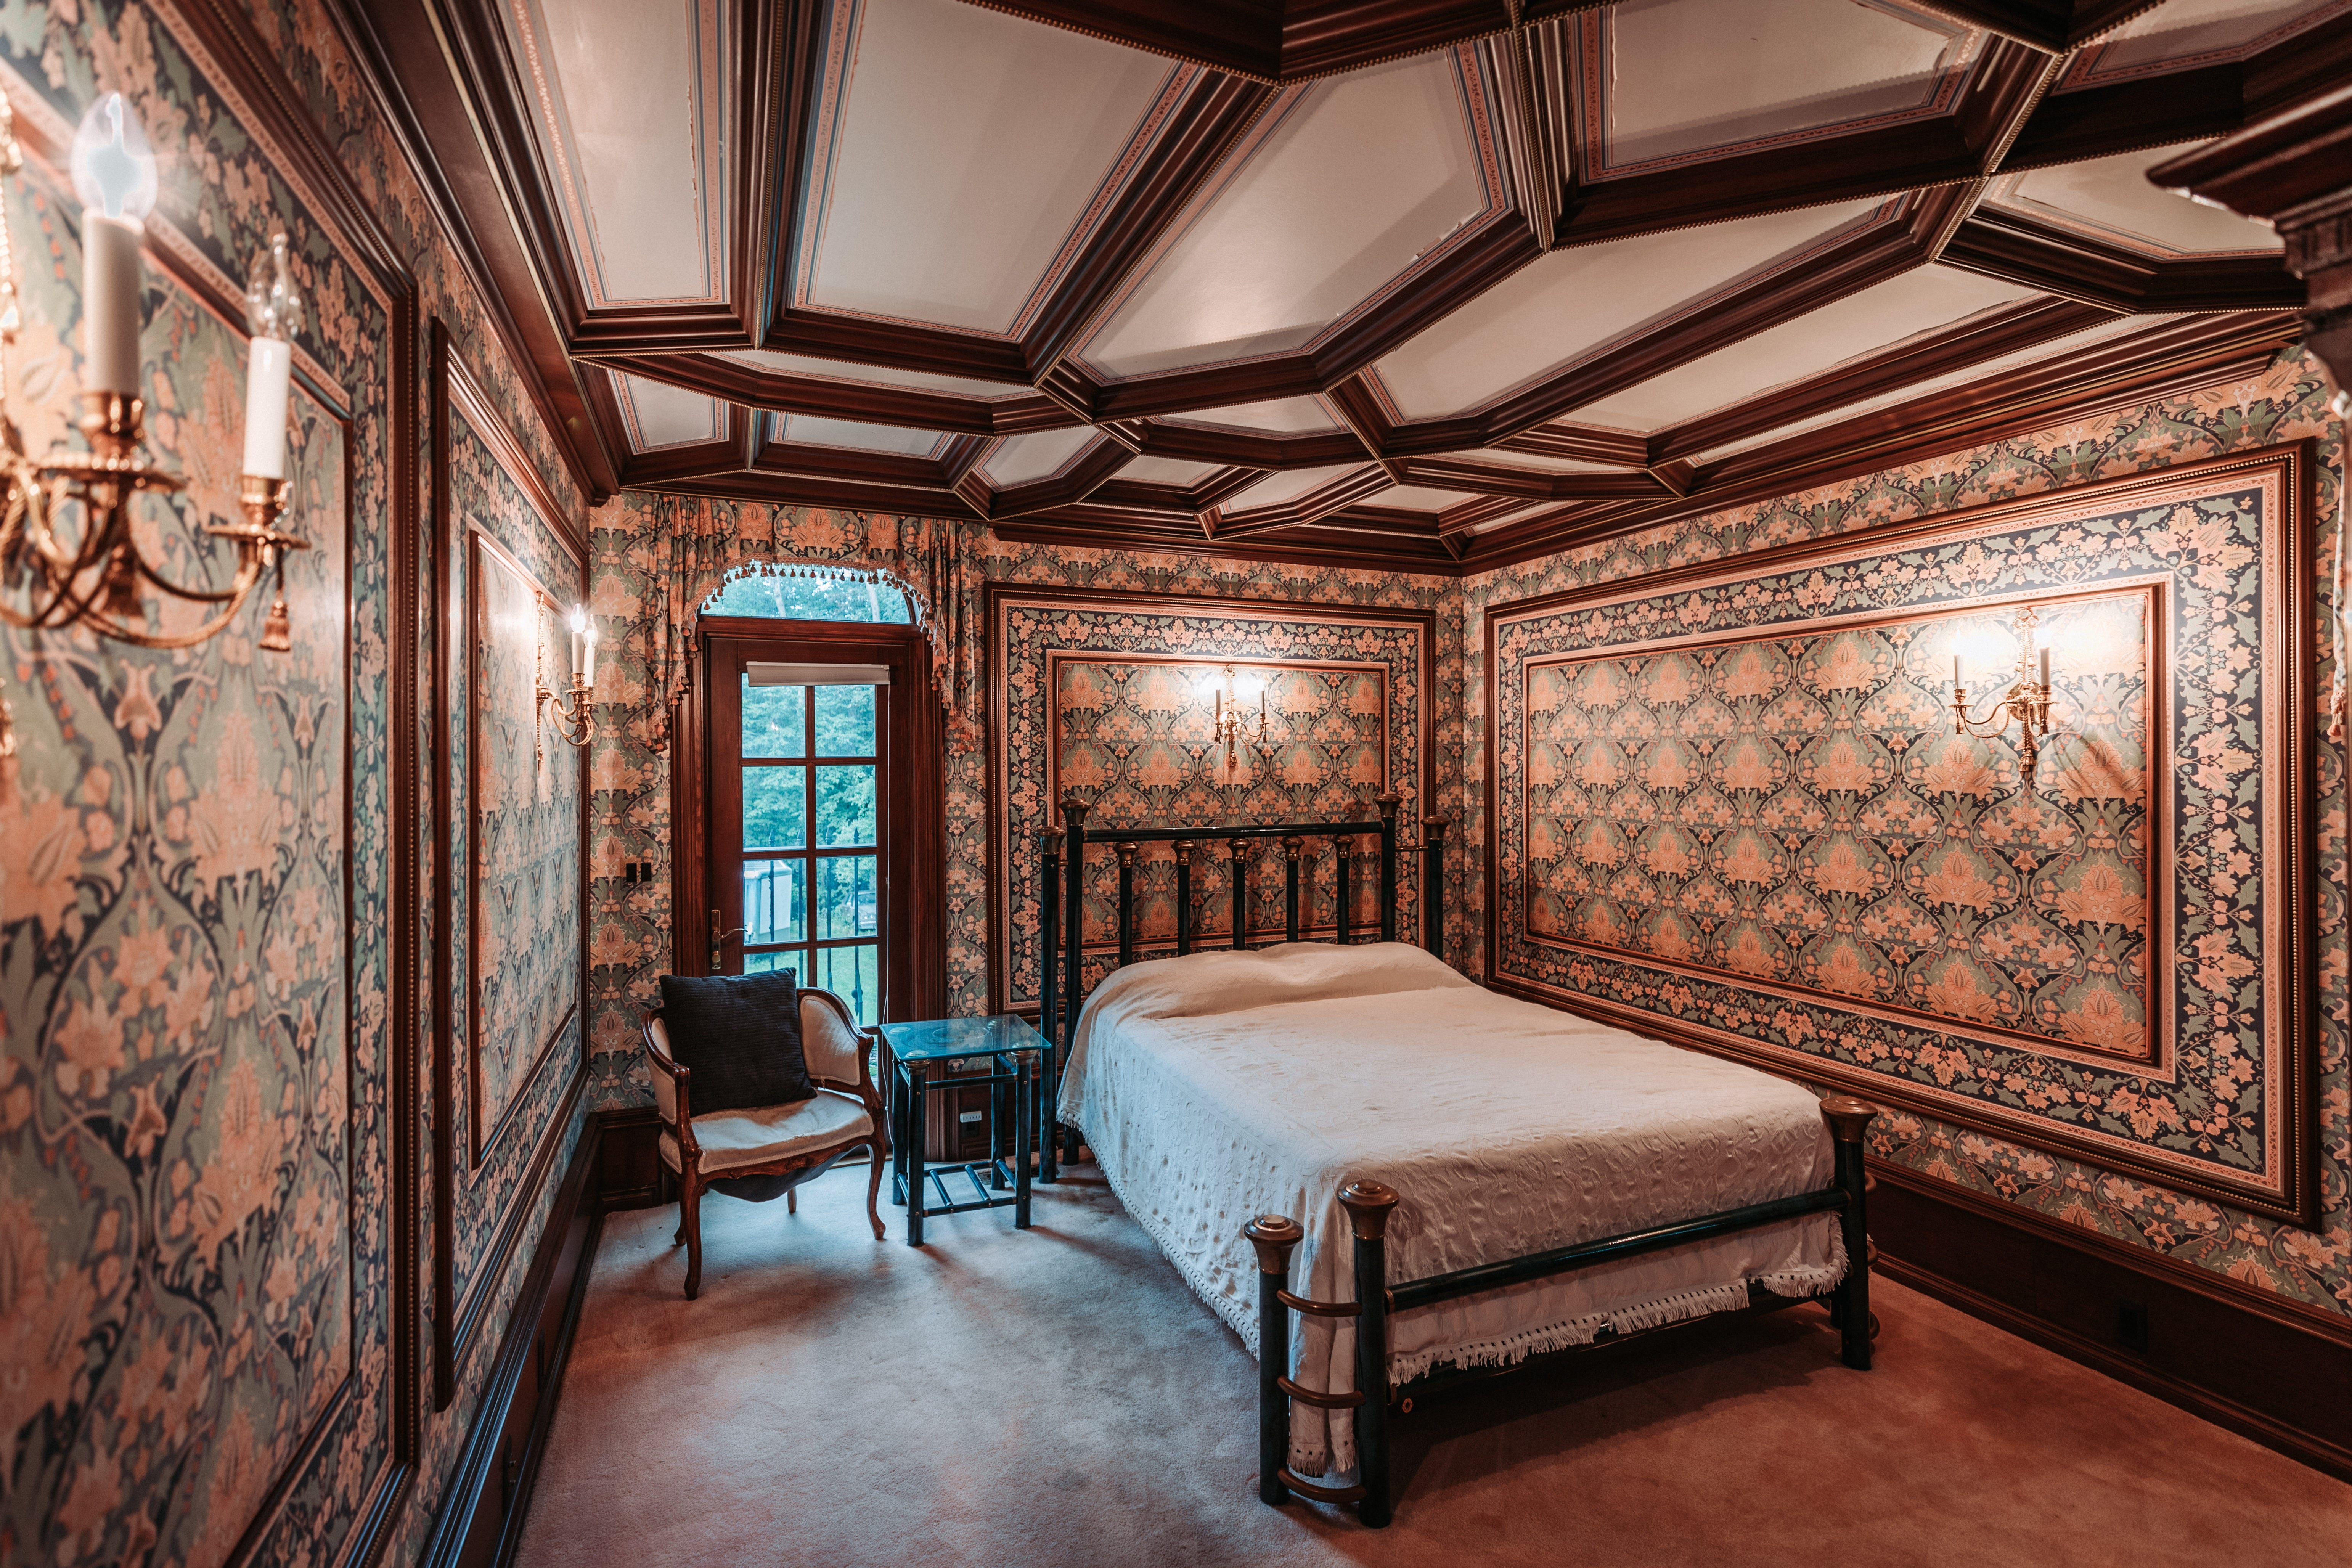 Ein weiteres Schlafzimmer in LeBlanc Castle, das vom schottischen Baronialstil des Mittelalters inspiriert ist.